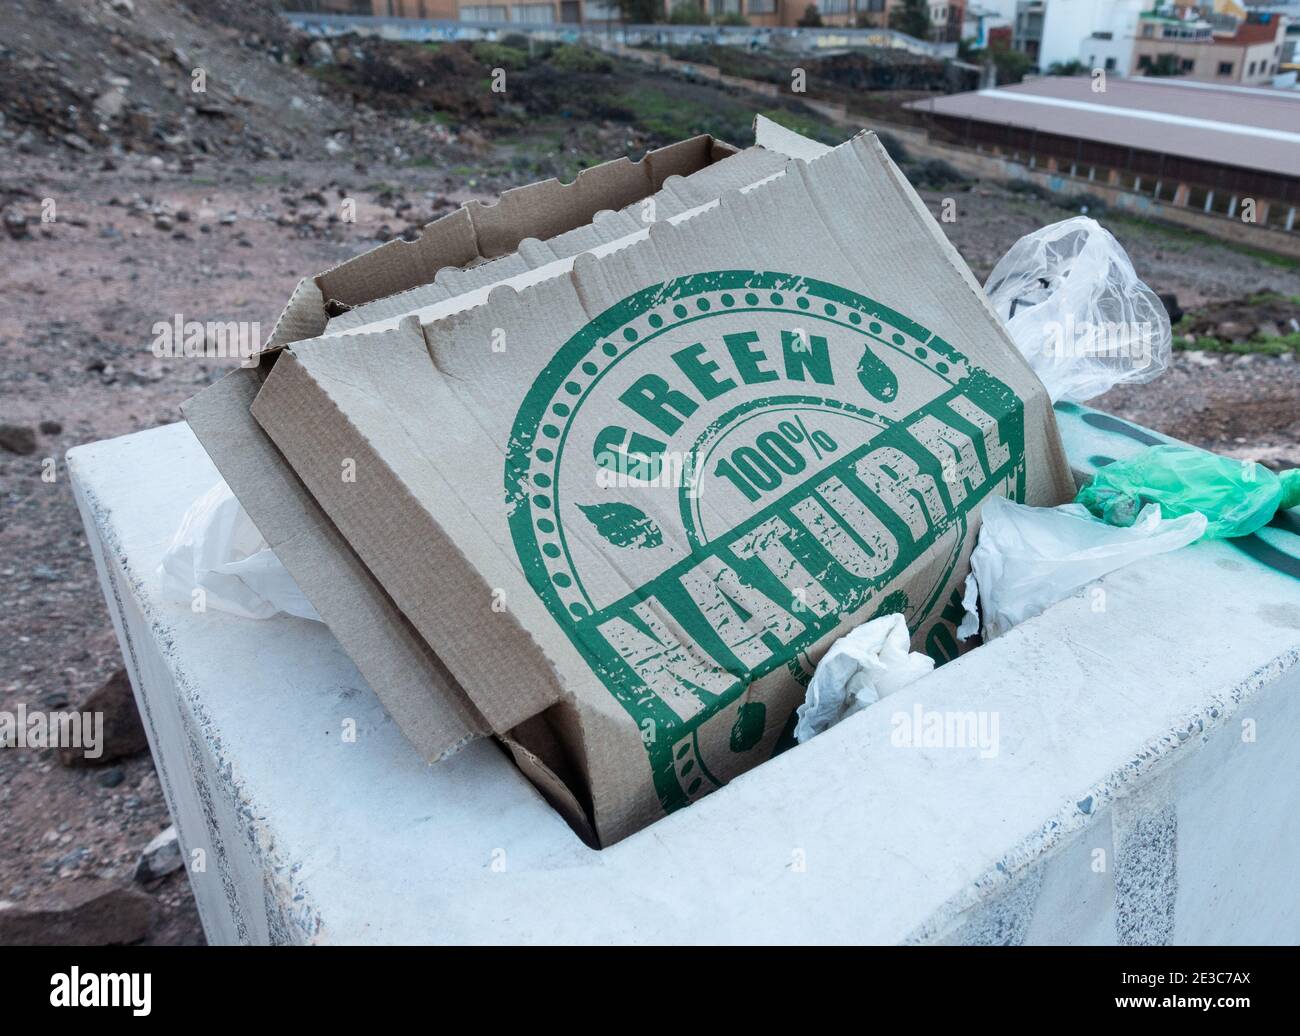 confezione per pizze 100% verde naturale in bidone con sacchetti di plastica. Foto Stock